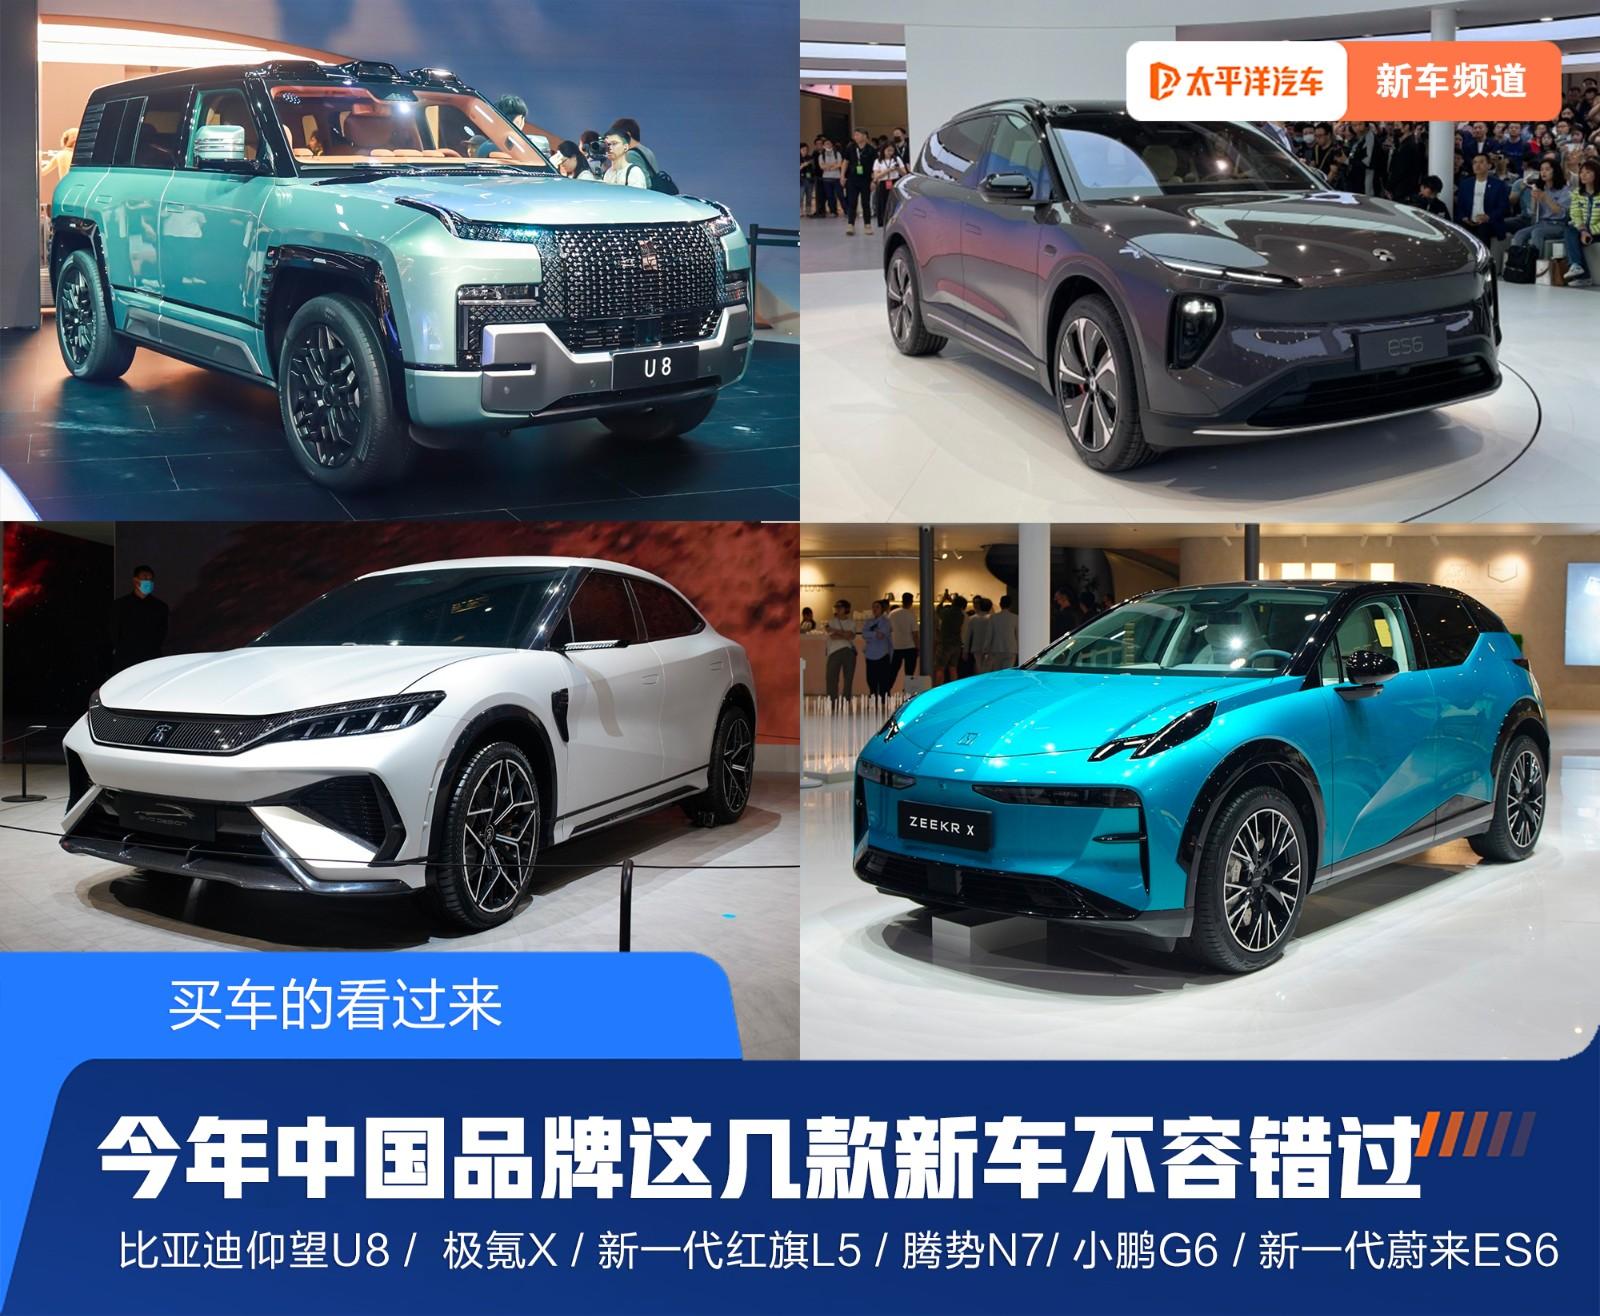 【太平洋汽车 新车频道】在刚刚过去的2023上海车展，据太平洋汽车的不完全统计，这次展出的新车在250台以上，这么多车也令人眼花缭乱、目不暇接。其中，自主品牌的光芒几乎有掩盖